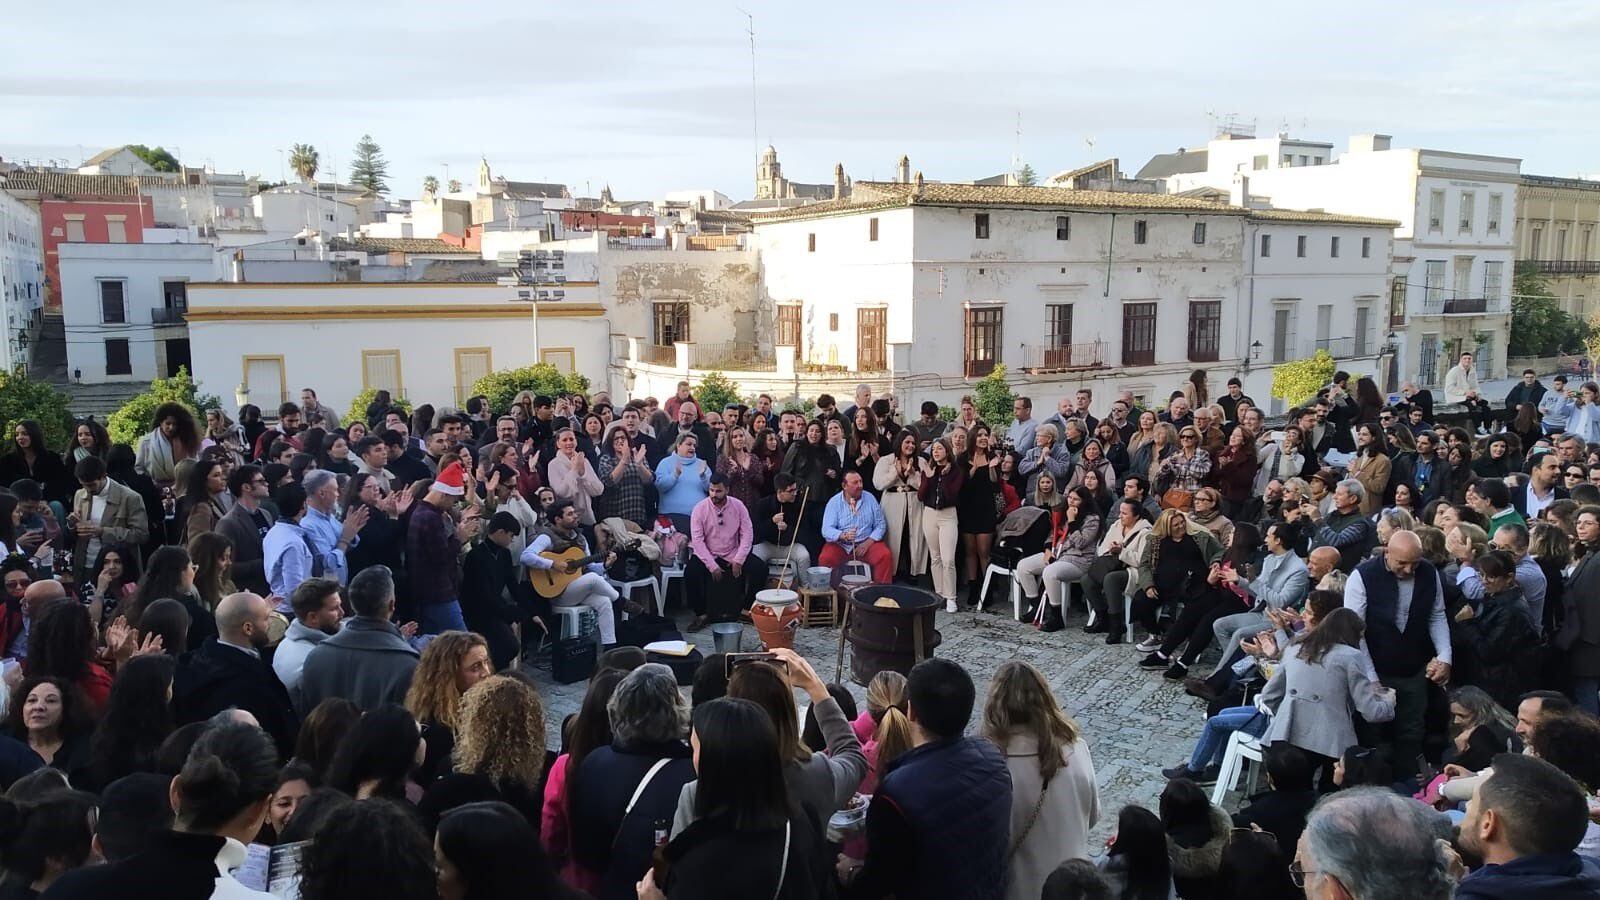 Celebración de una zambomba, el pasado 20 de diciembre, en una plaza de Jerez de la Frontera (Cádiz).  